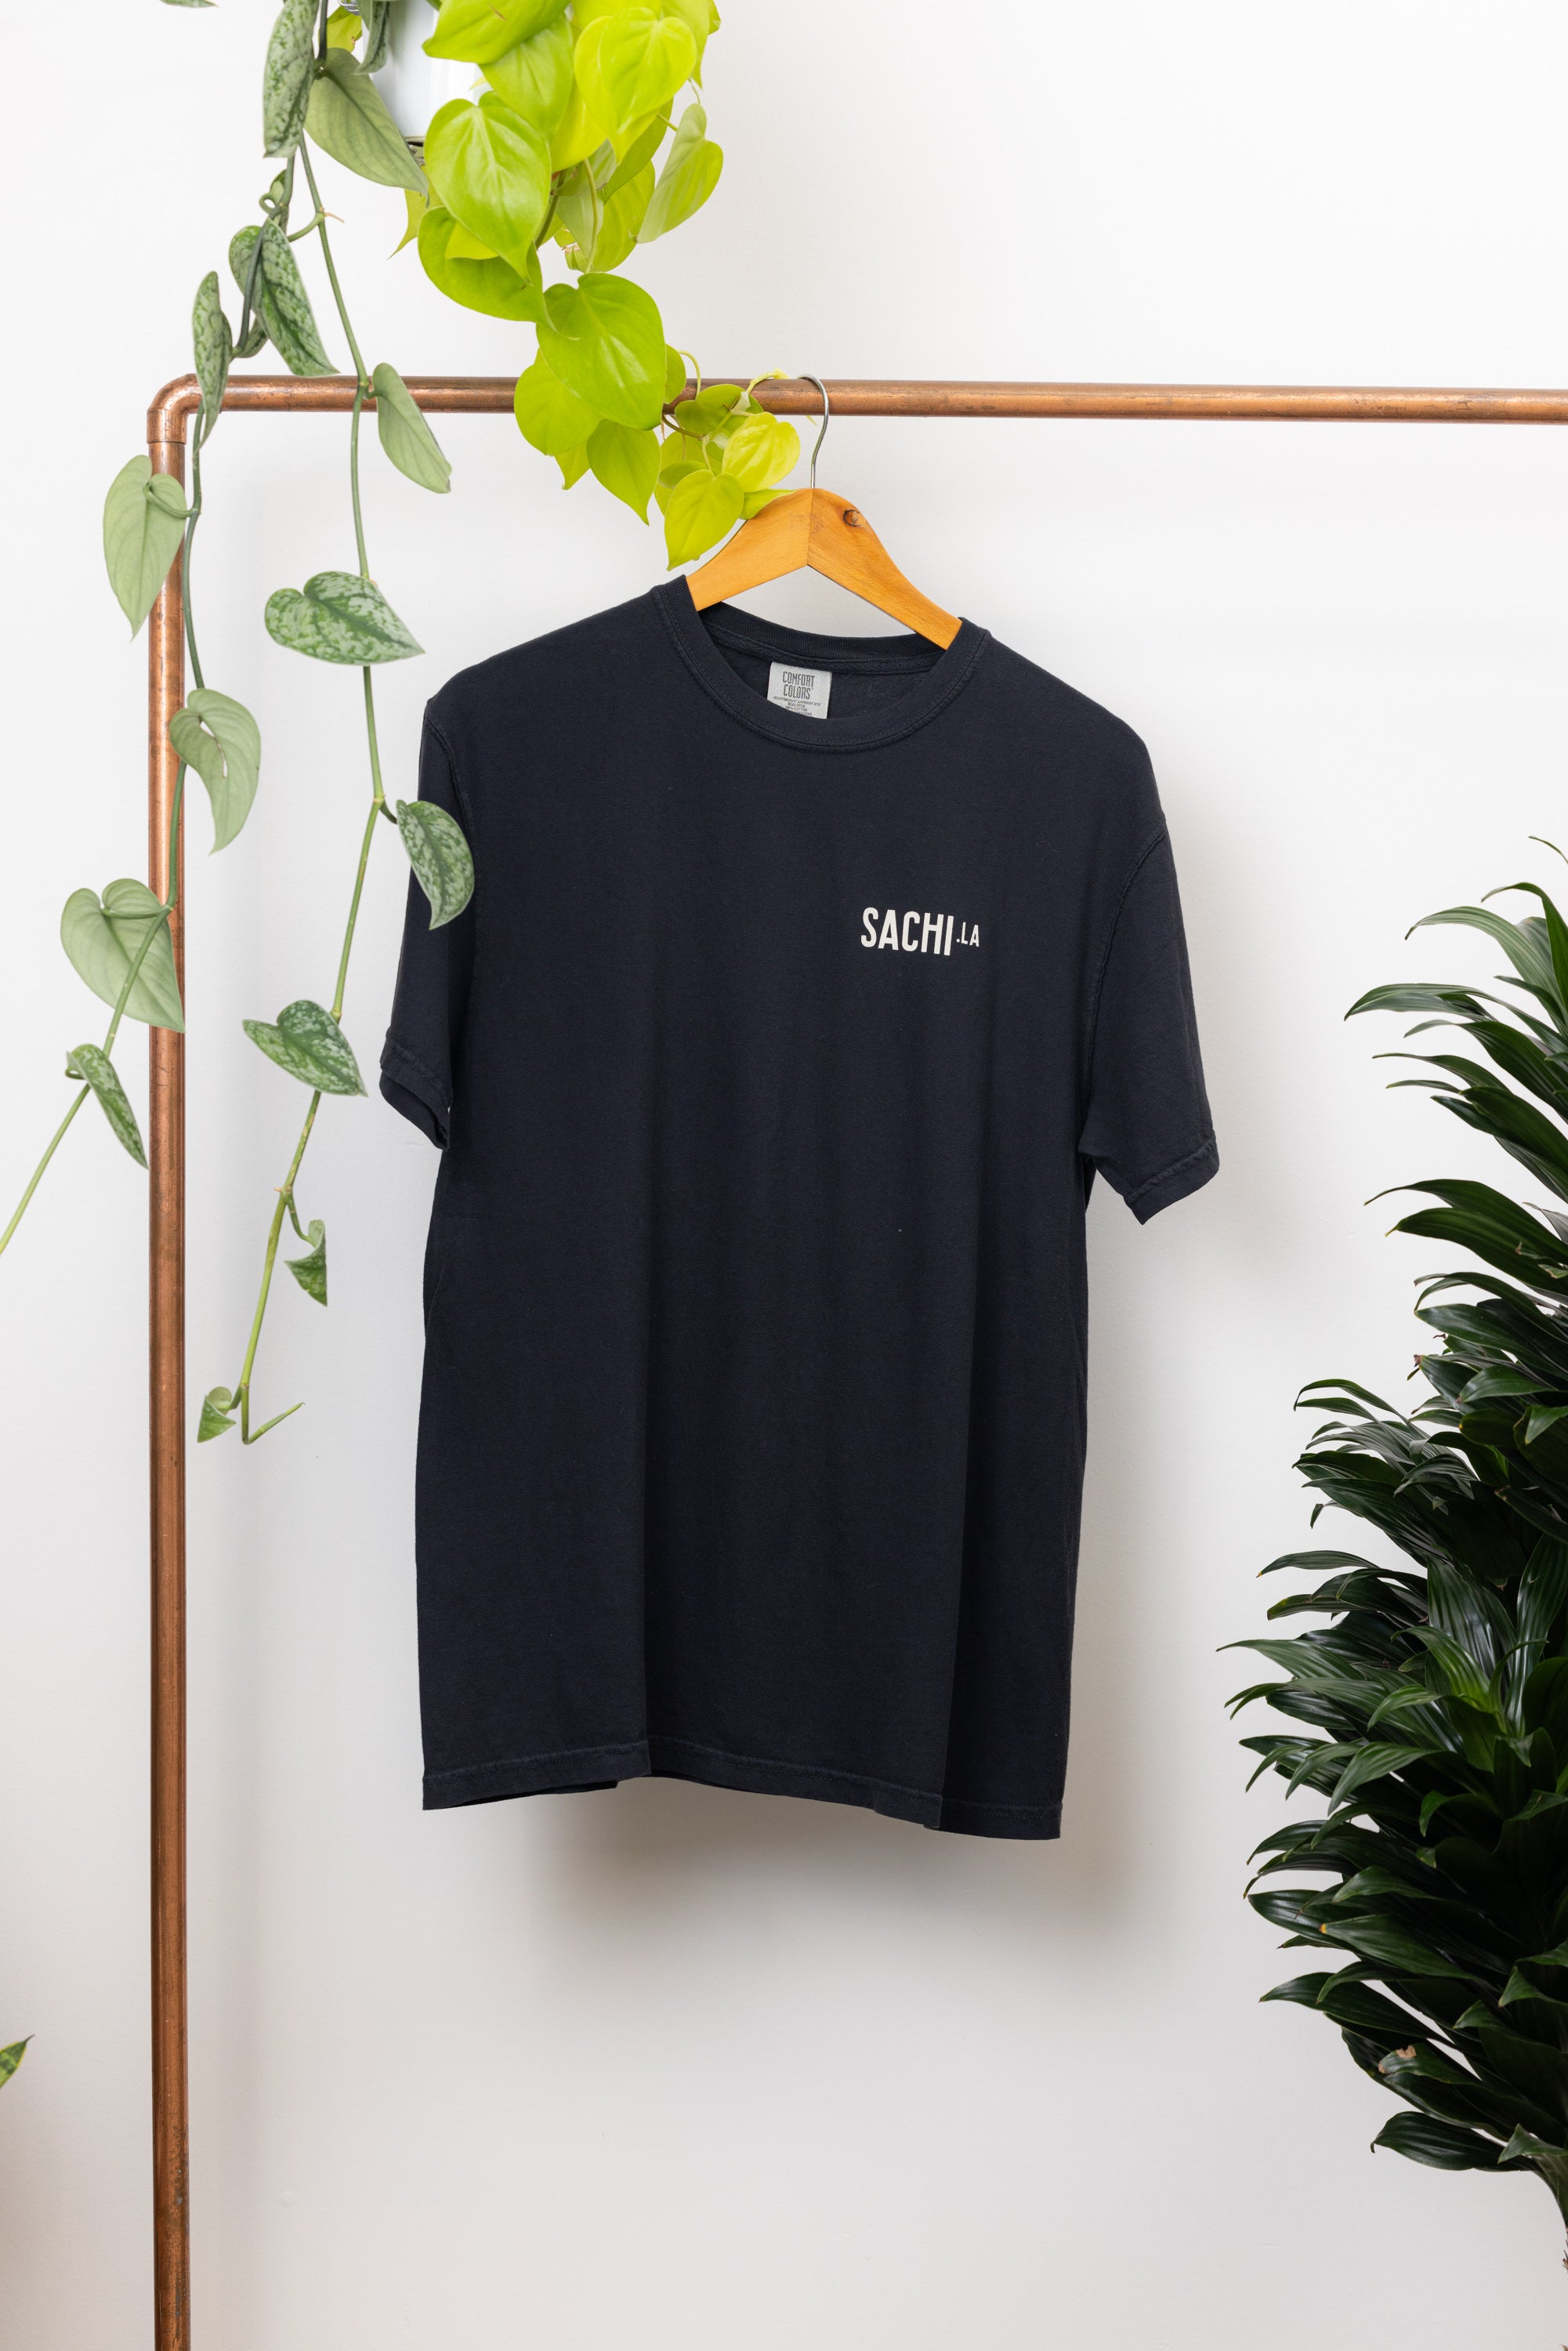 Black SACHI.LA T-Shirt (幸)